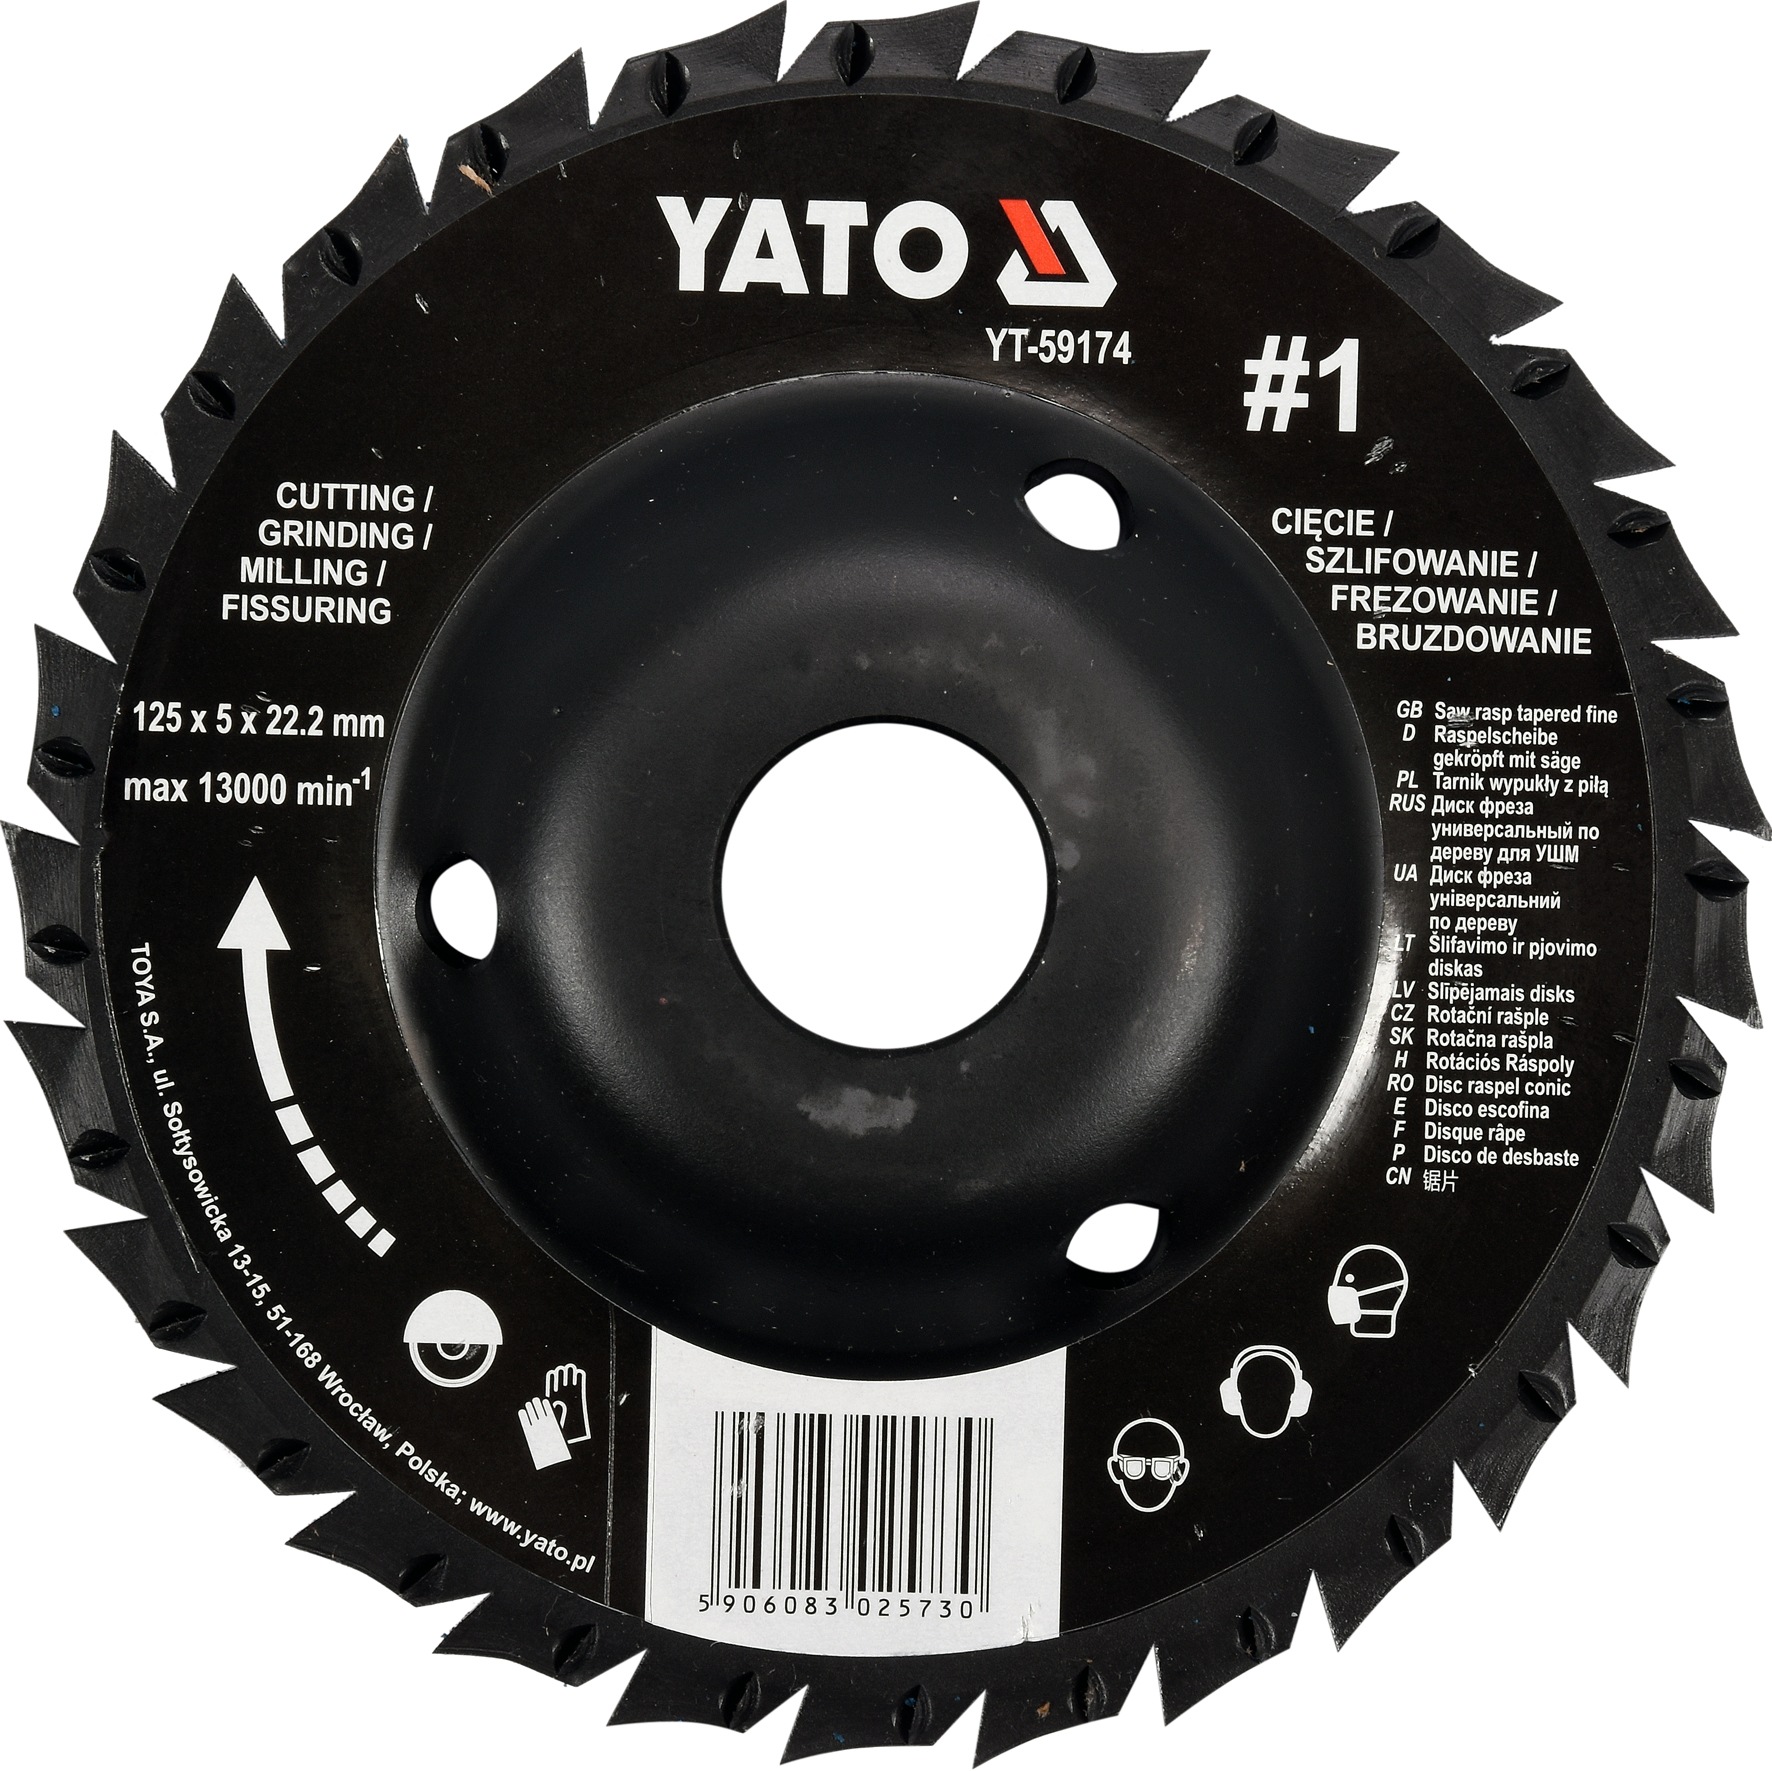 YATO YT-59174 Rotační rašple pilková úhlová 125 mm typ 1